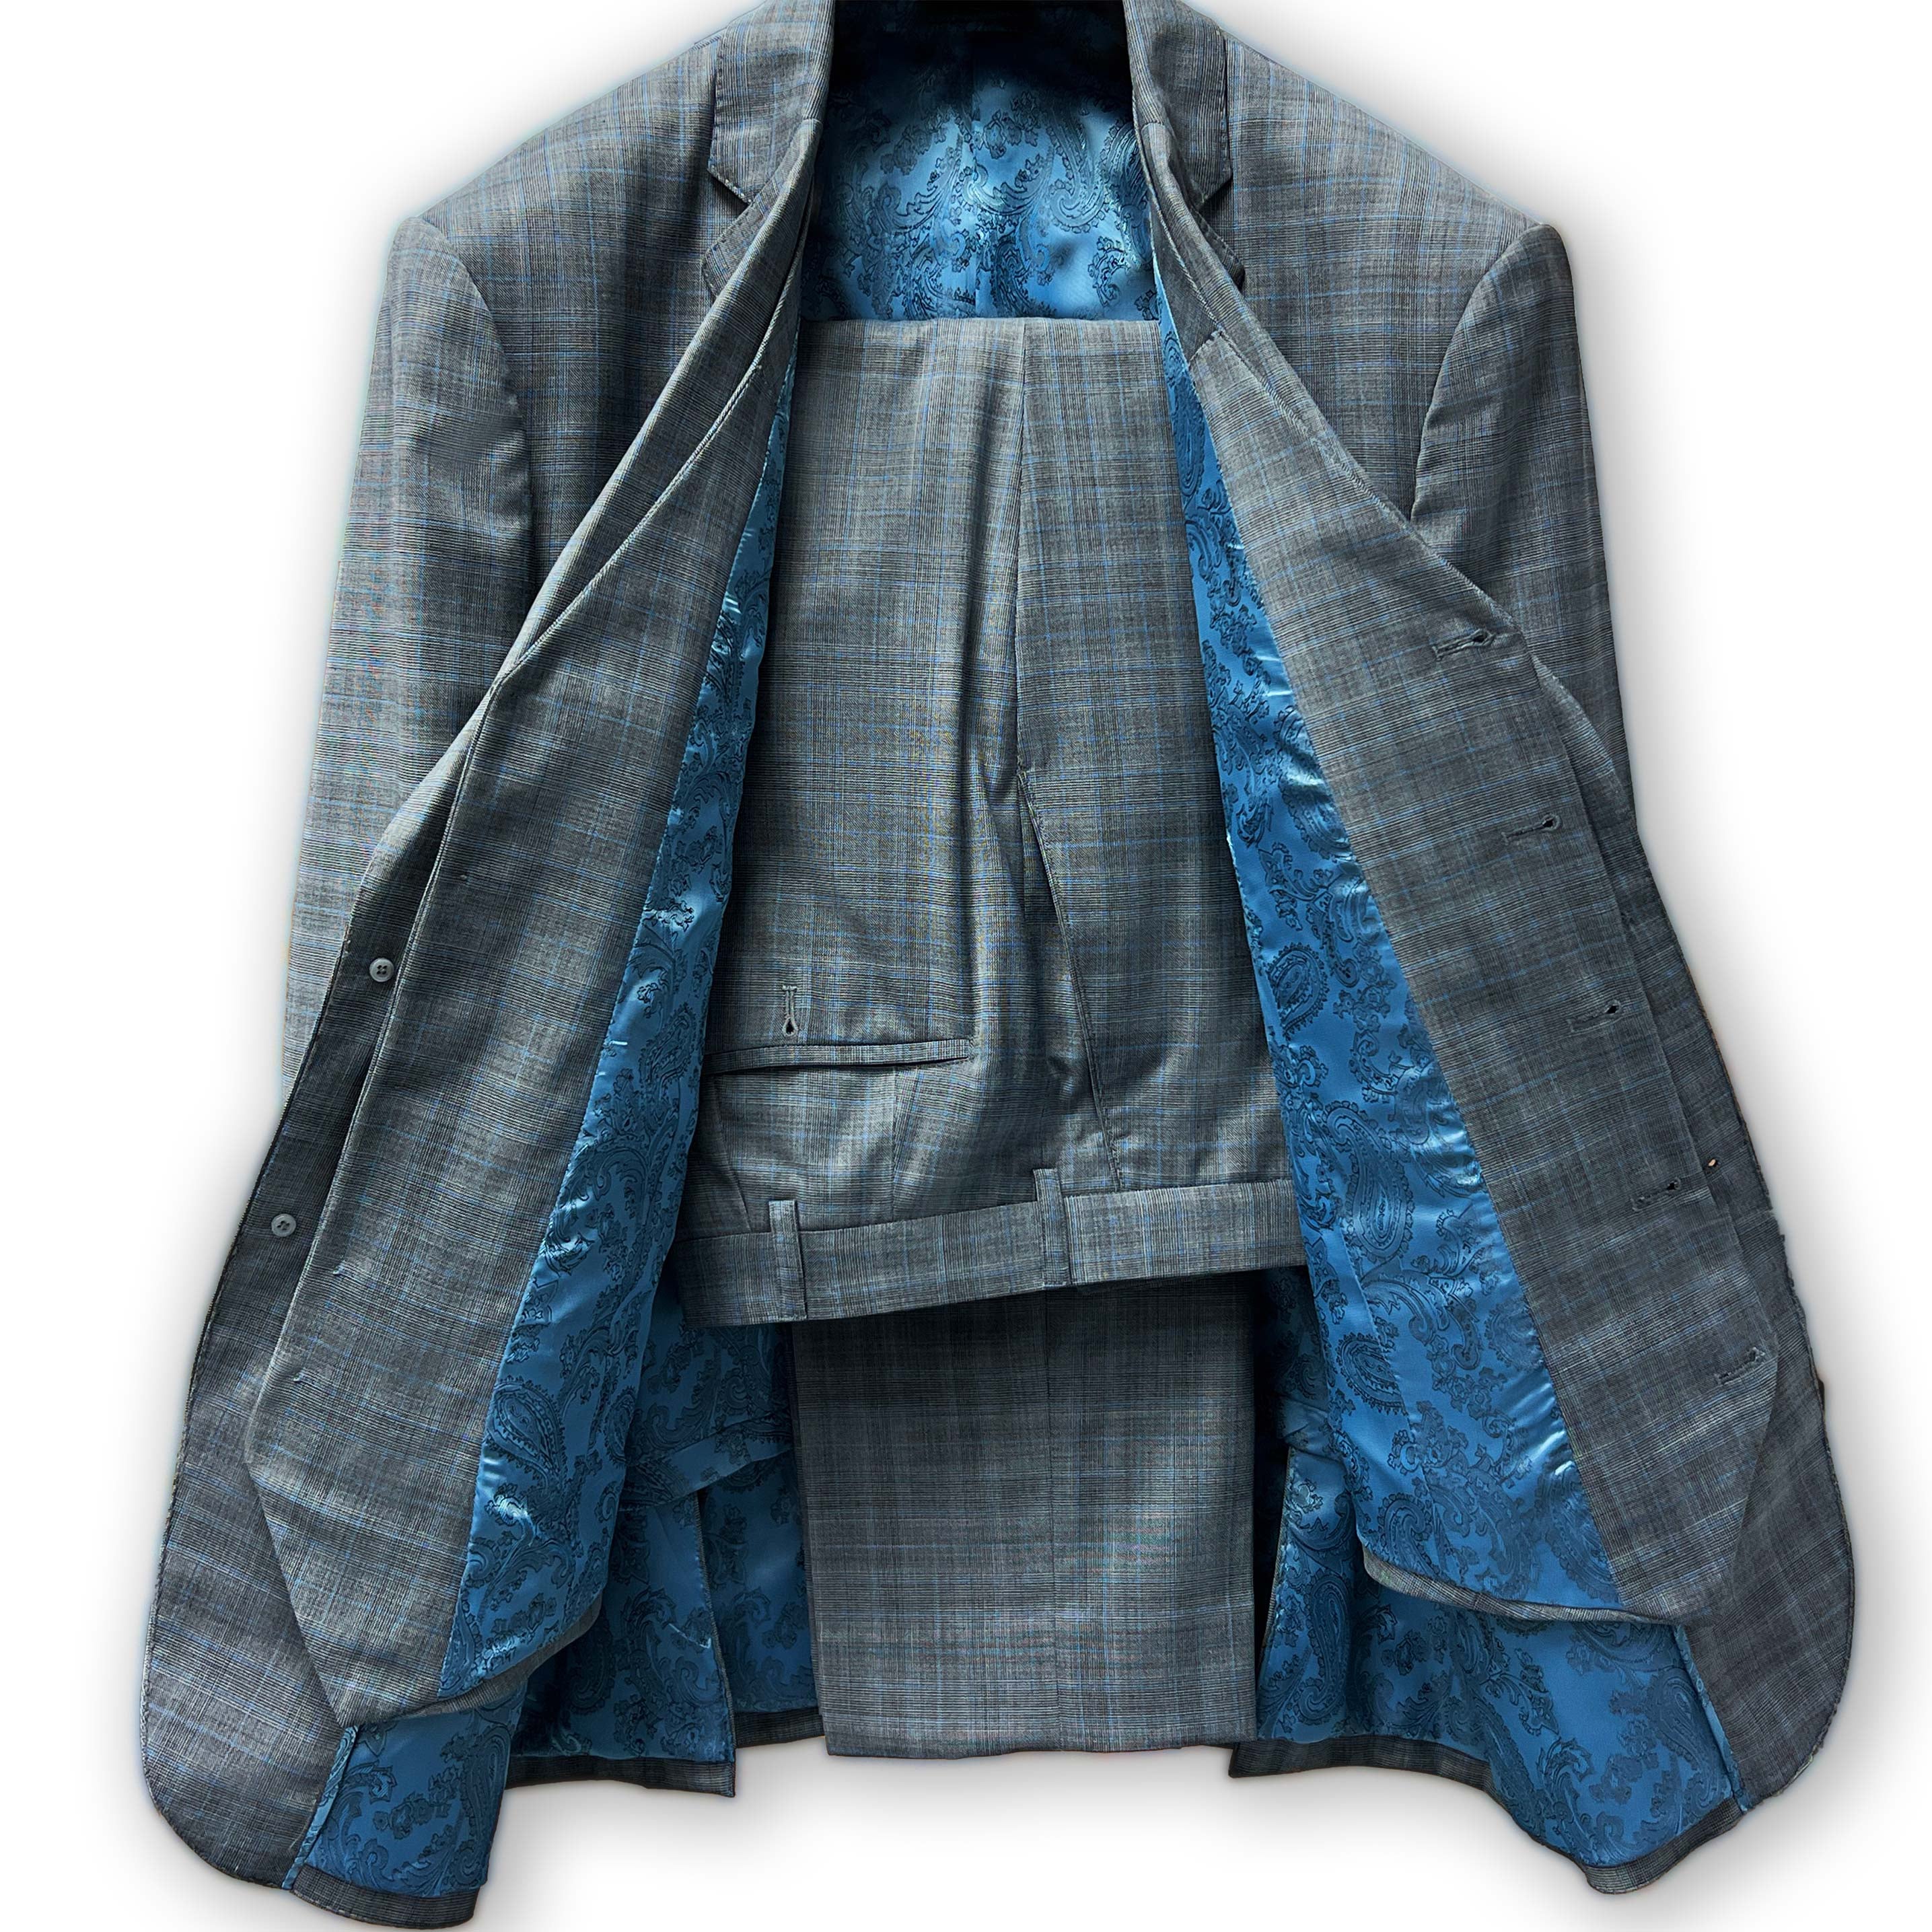 Men's plaid 3 piece suit by Westwood Hart, back view.